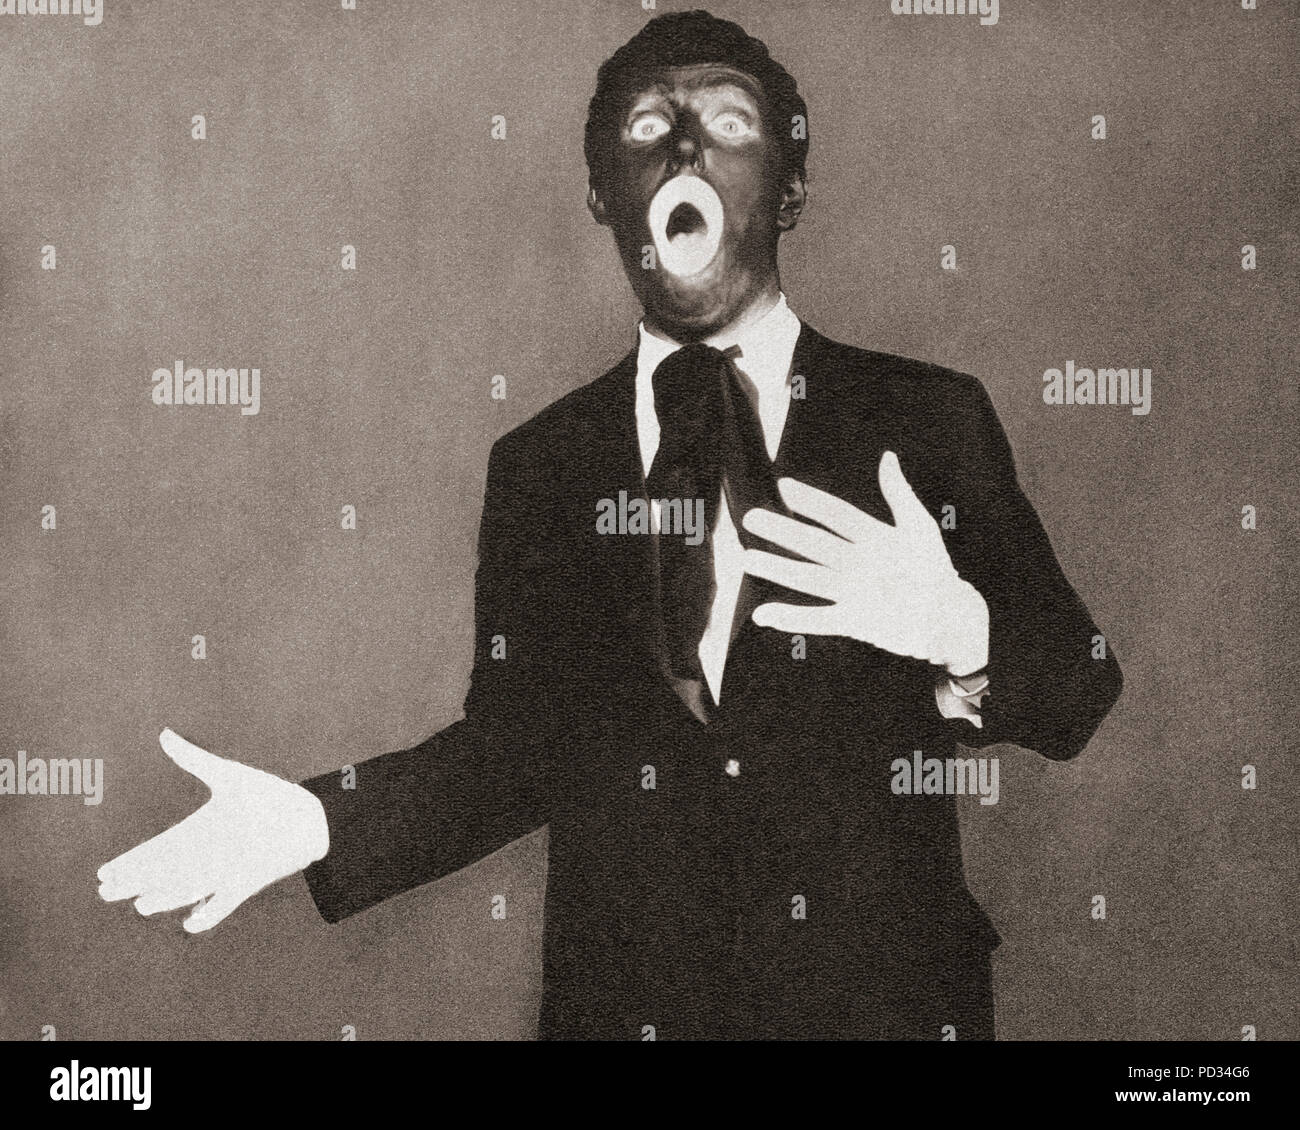 Al Jolson oder Albert, geboren Asa Yoelson, 1886 - 1950. Us-amerikanischer Sänger, Schauspieler, Bühne und Film Schauspieler. Hier zu sehen in Blackface. Von diesen enormen Jahre, veröffentlicht 1938. Stockfoto